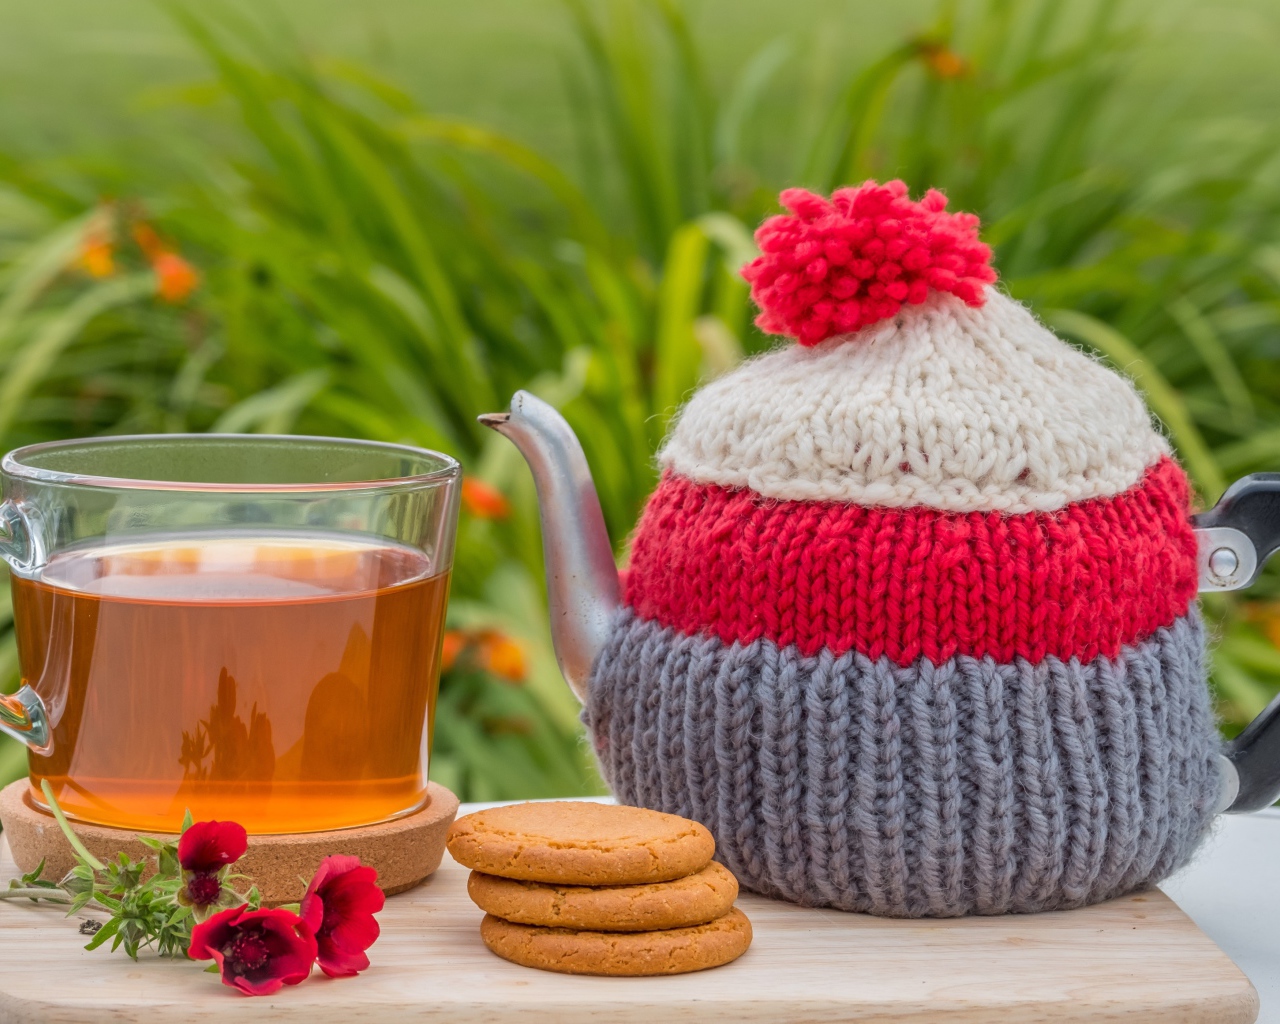 Чайник с чашкой чая на столе с печеньем и цветами